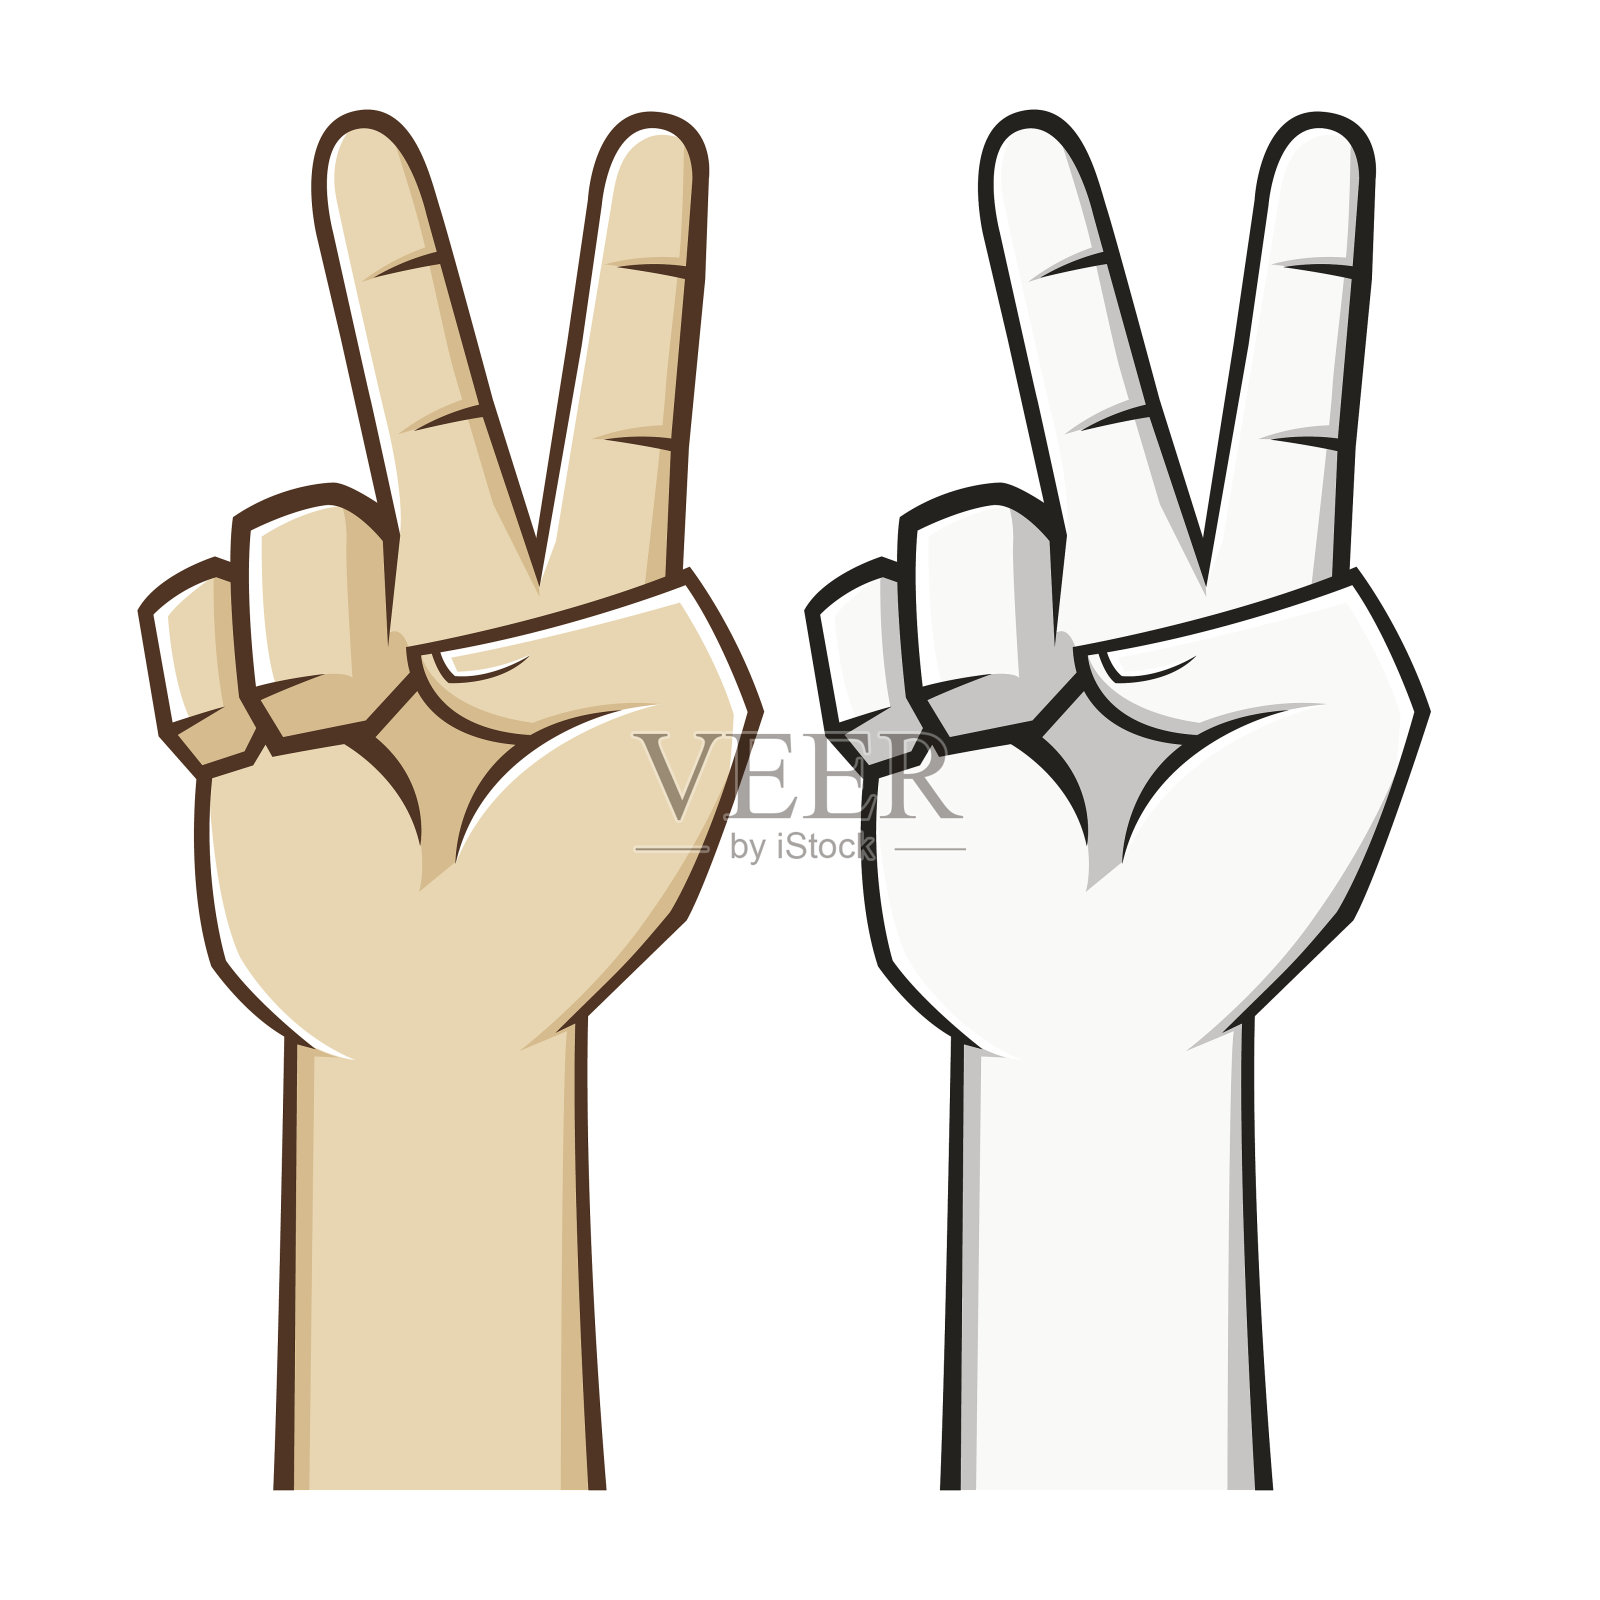 代表和平的手势图片